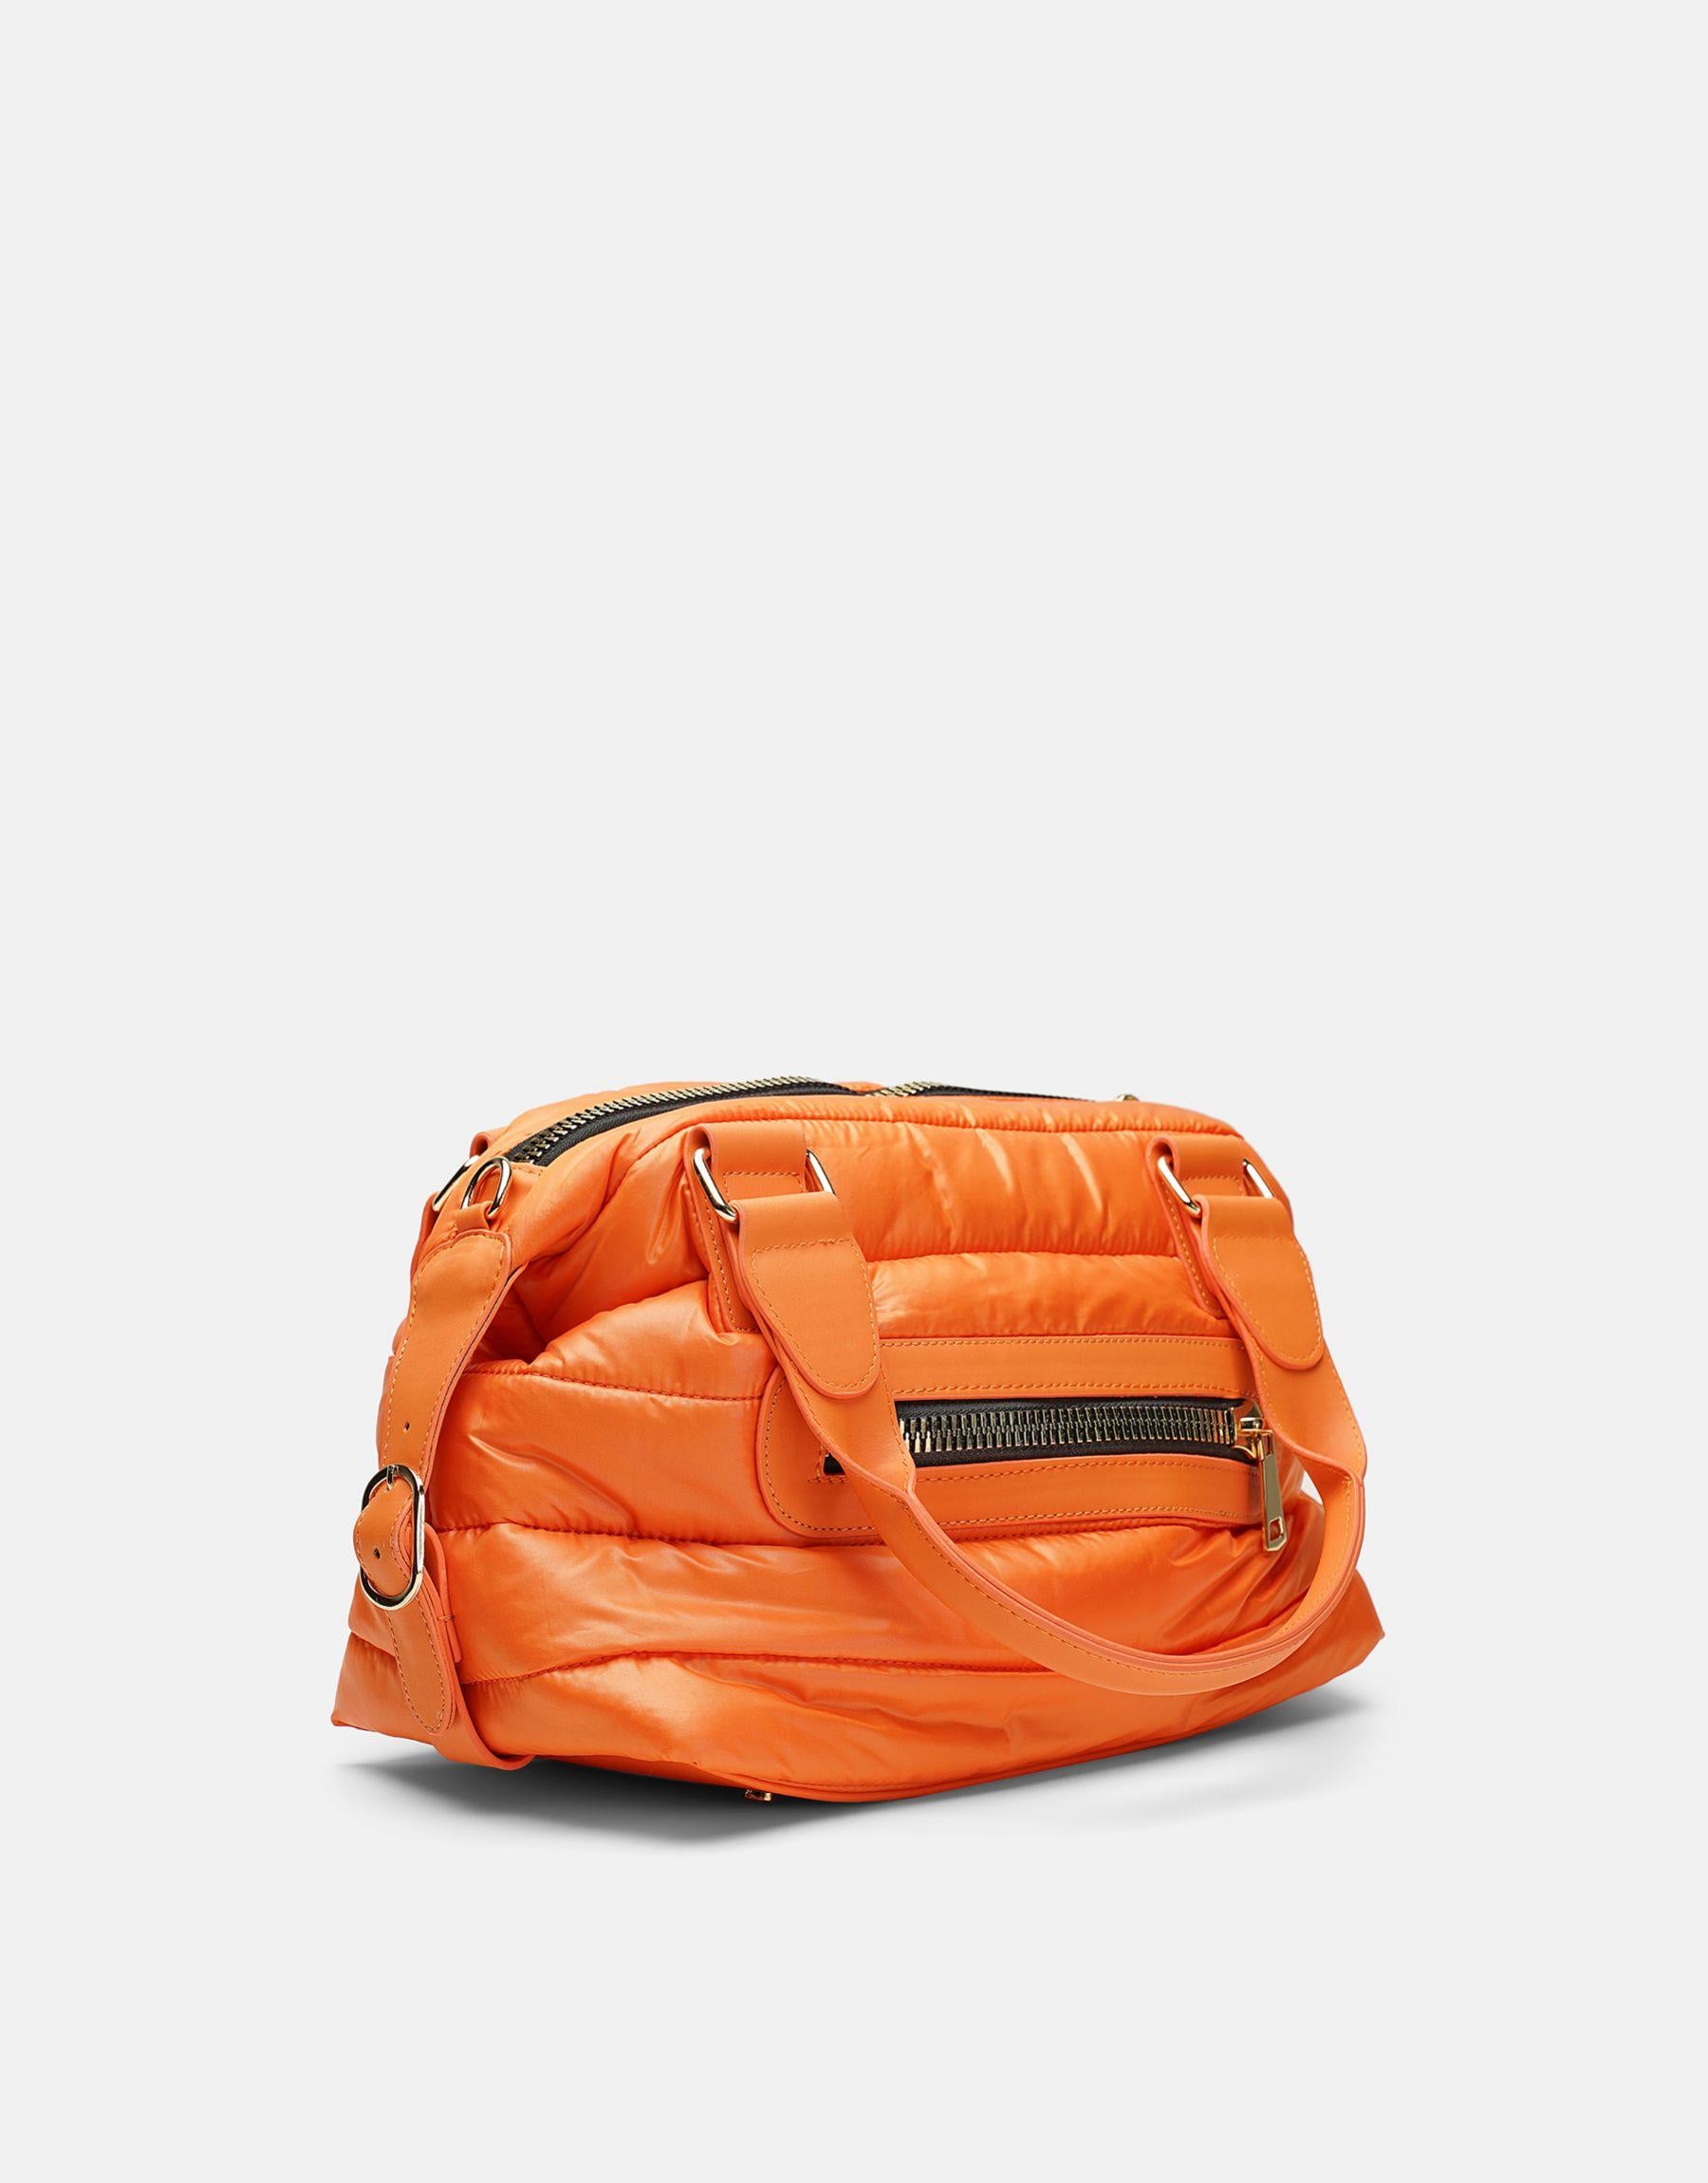 Theon Fallschirm-Gewebe Frauenhandtasche |Orange